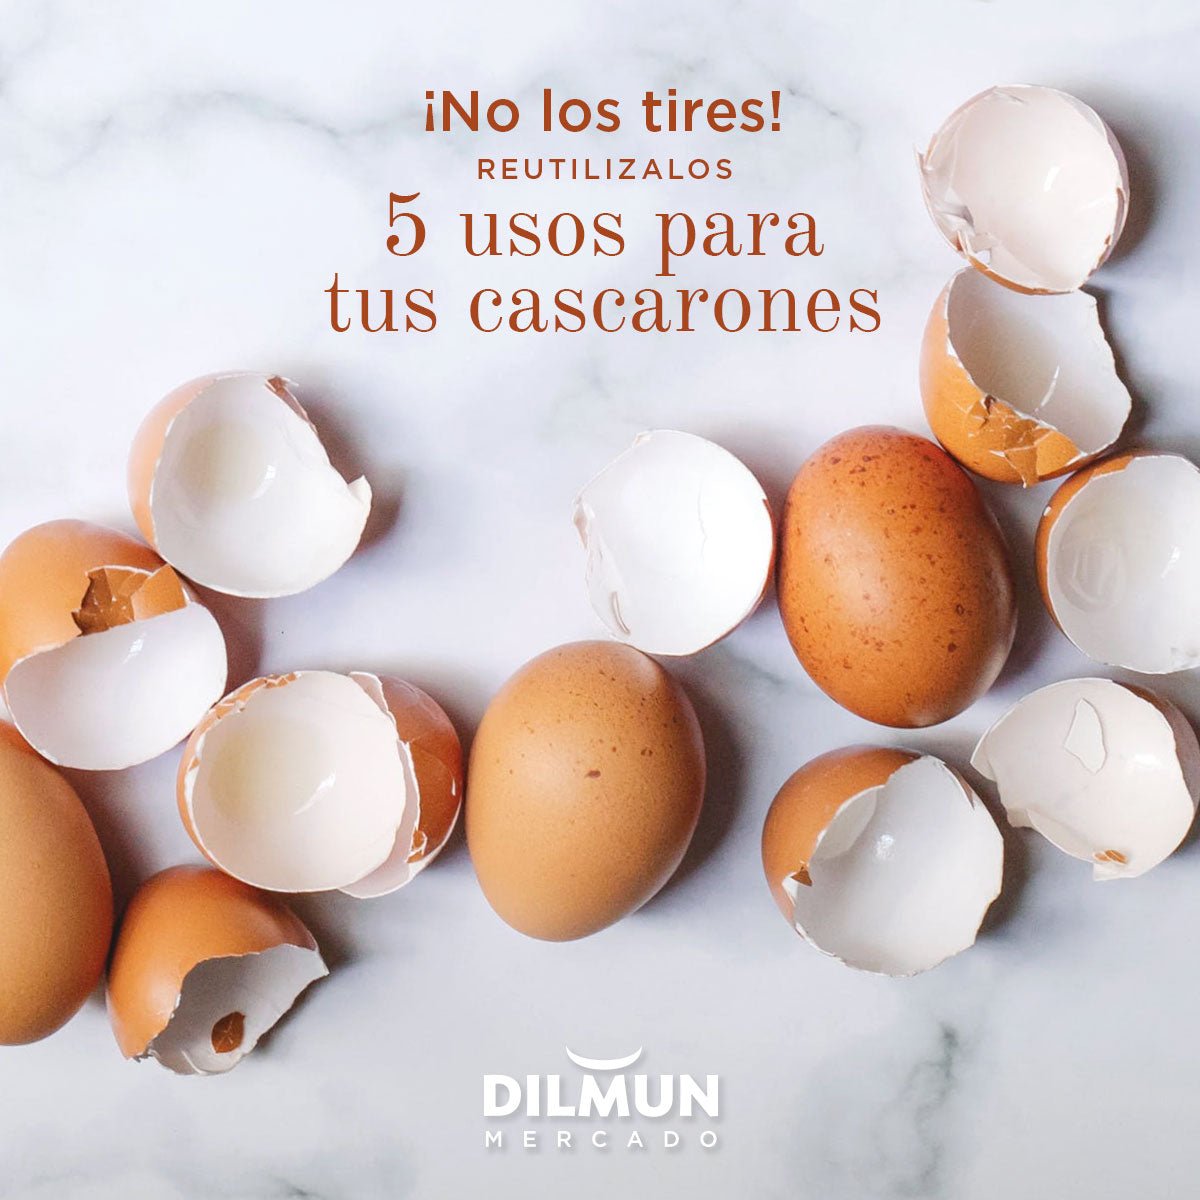 Reusa cascarones de huevo en tu casa